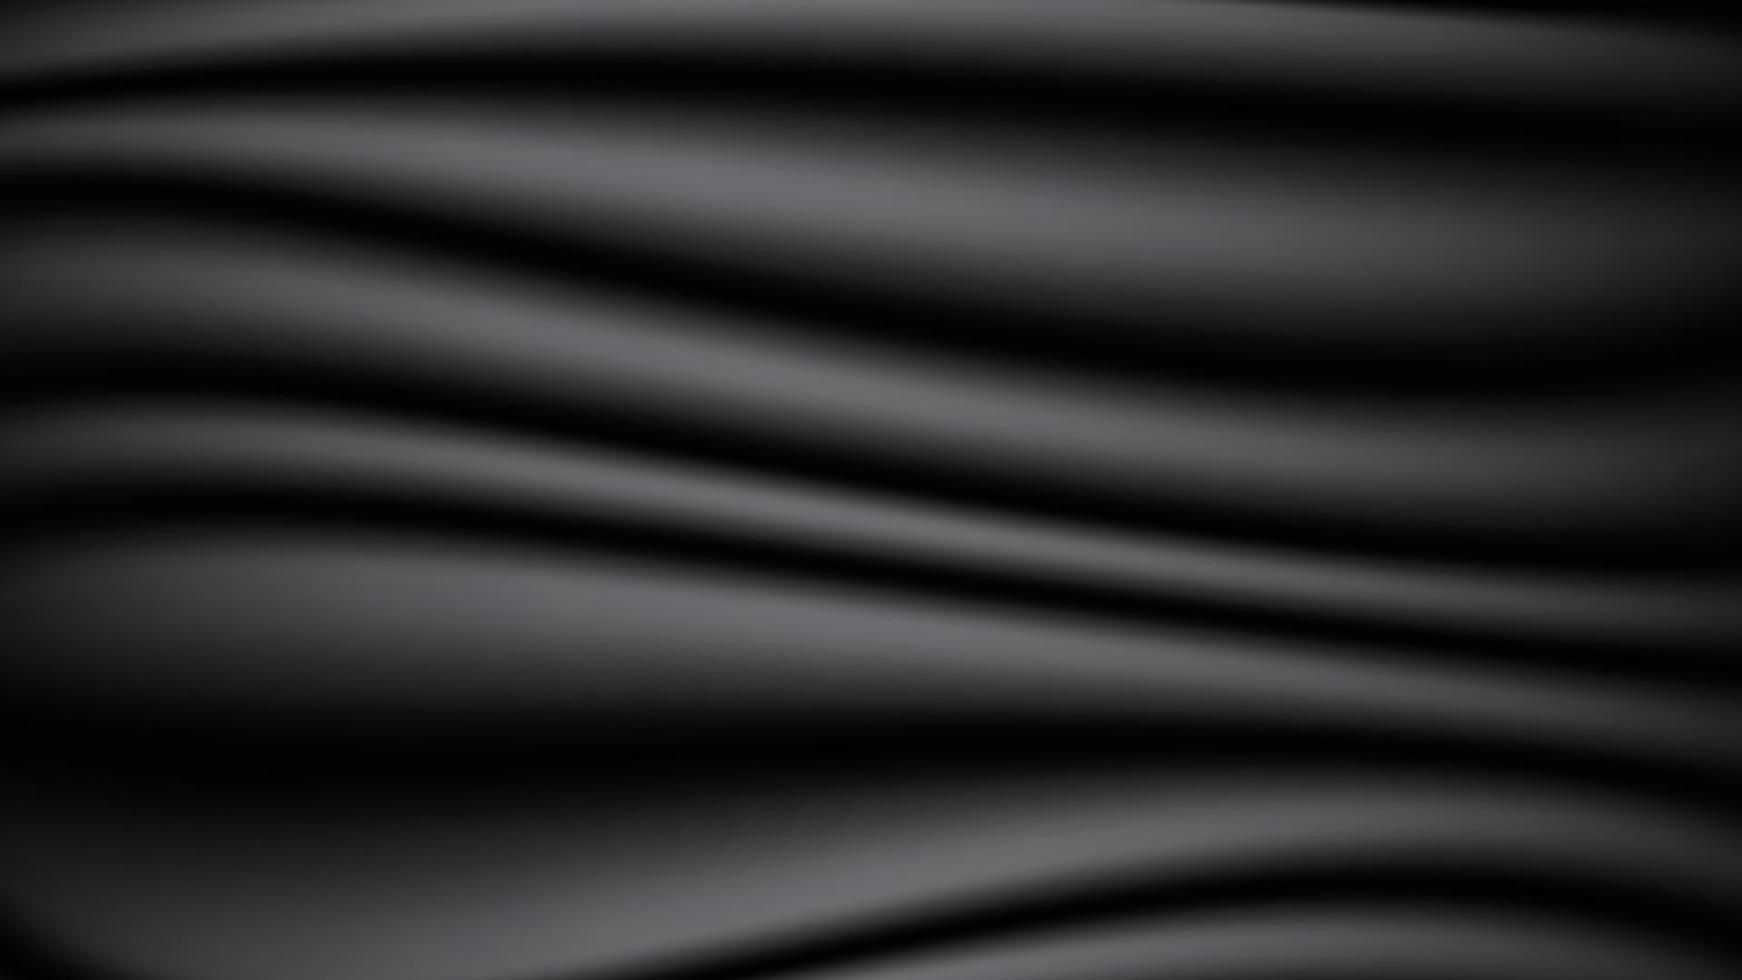 Elegante Textura De Tela Satinada Negra Lujoso Fondo De Tela Ondulada, Ropa  Negra, Tela Negra, Textura Satinada Imagen de Fondo Para Descarga Gratuita  - Pngtreee